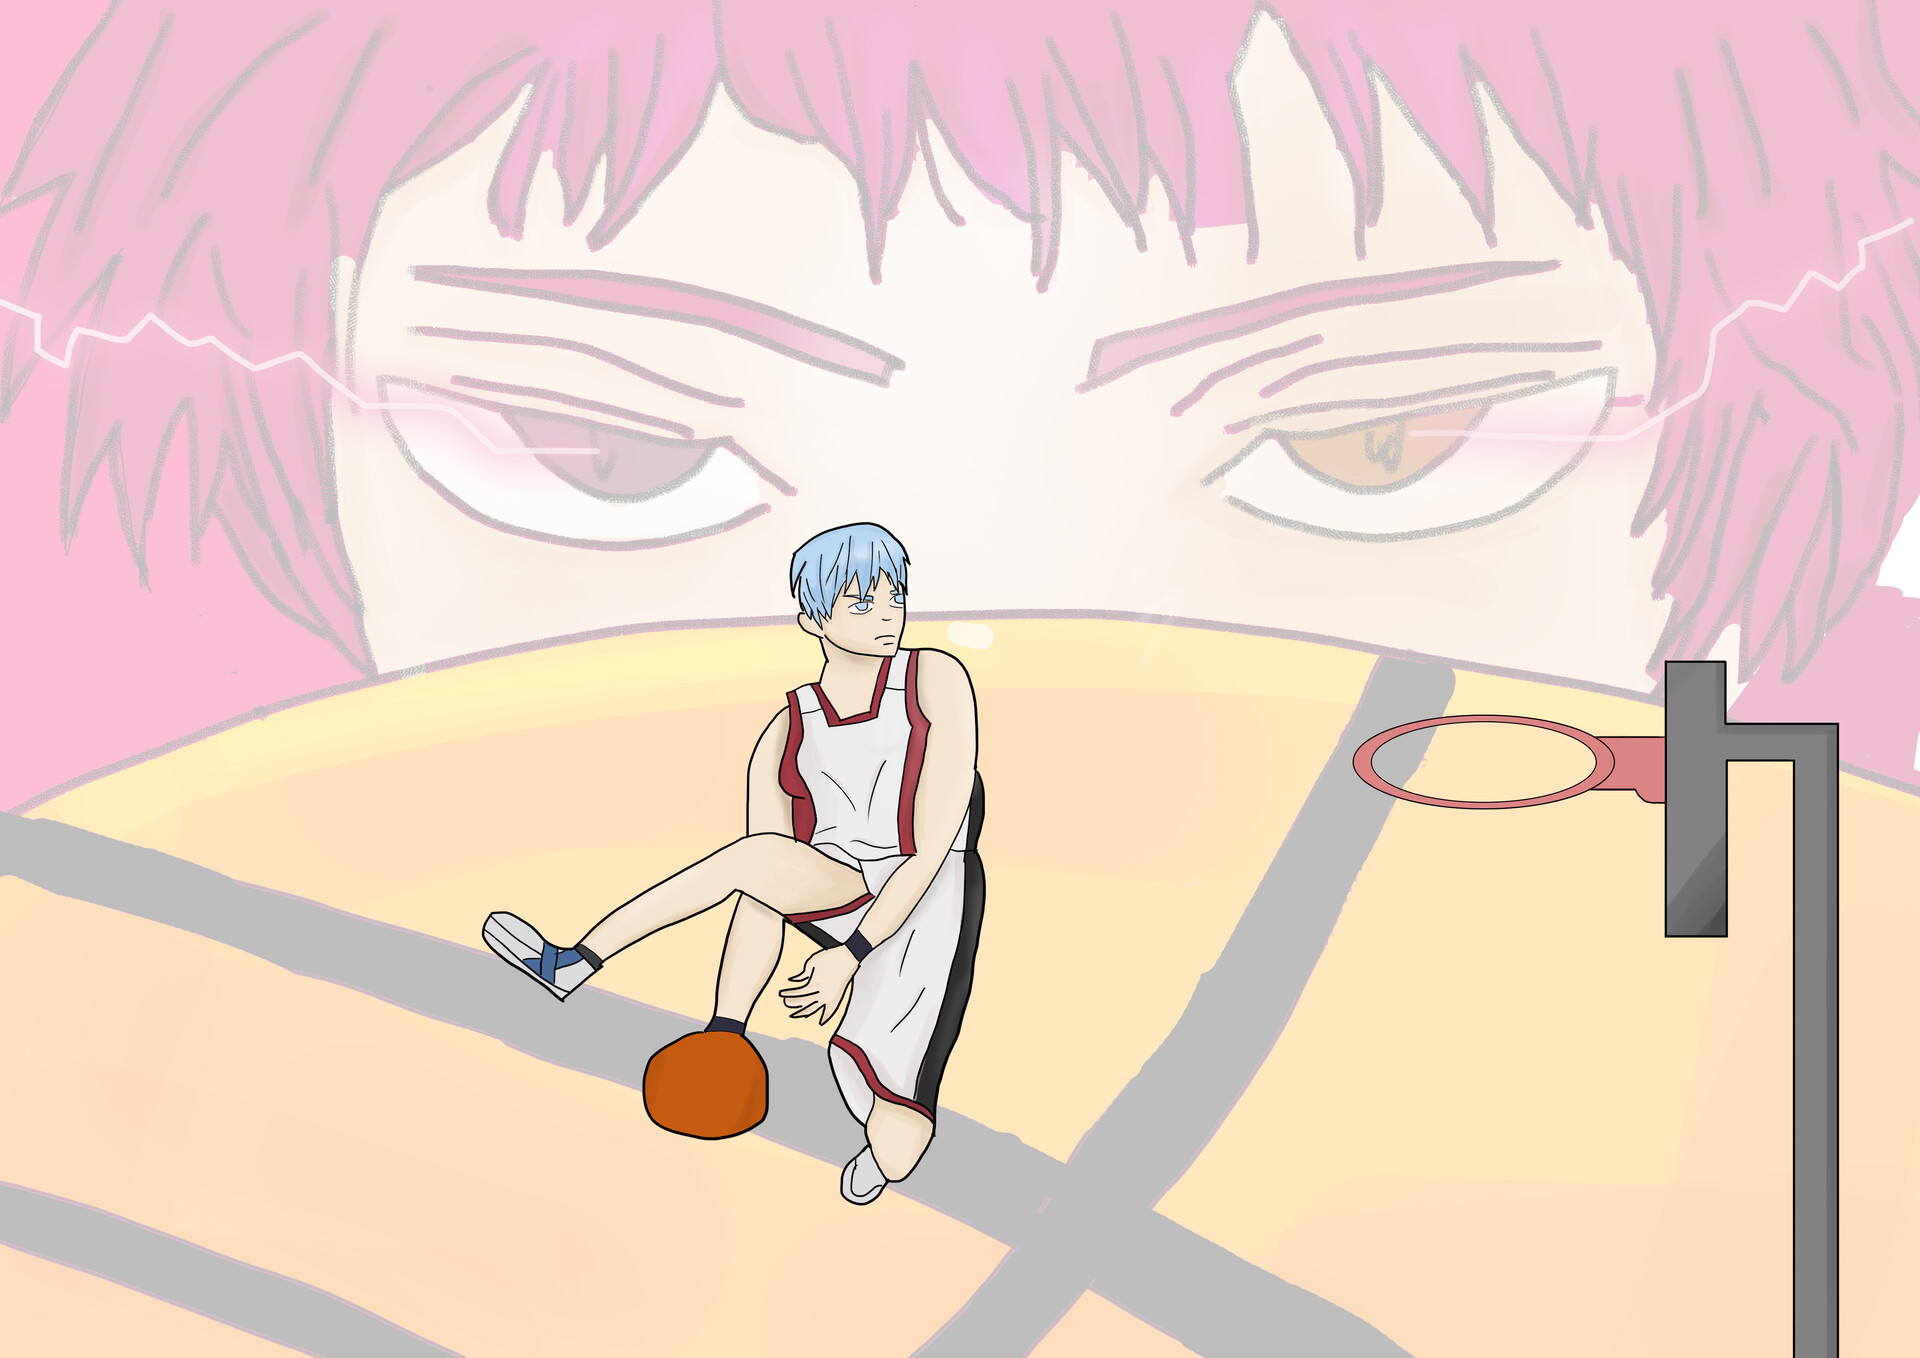 Kagami #KnB  Kuroko no basket, Anime basket, Kuroko's basketball